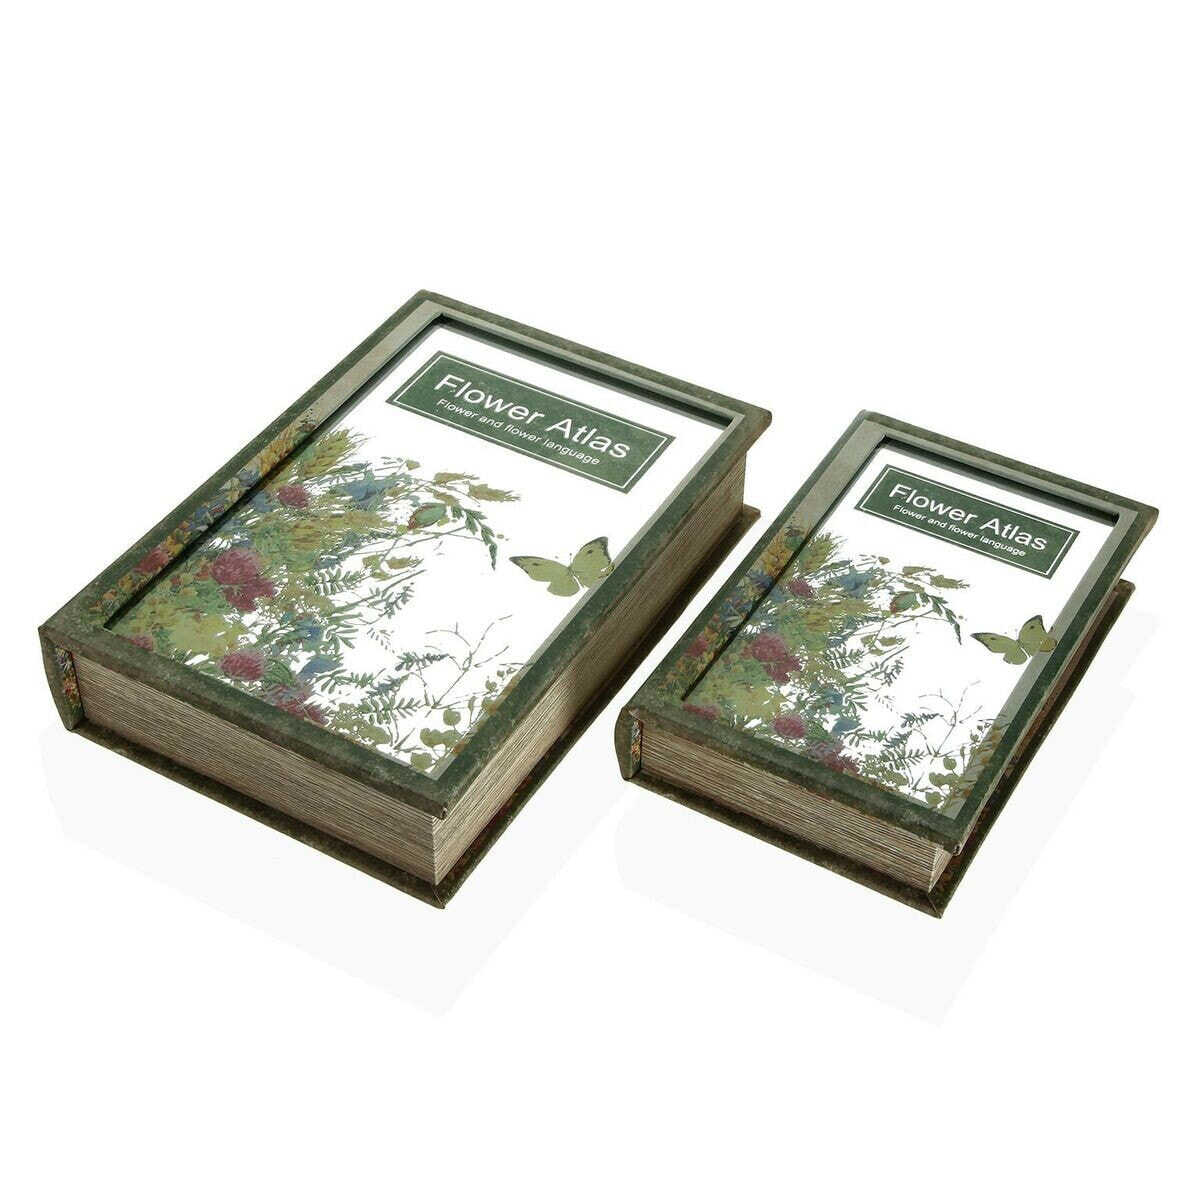 Декоративный шкафчик Versa Flower Atlas Буклет Полотно Зеркало Деревянный MDF 7 x 30 x 21 cm